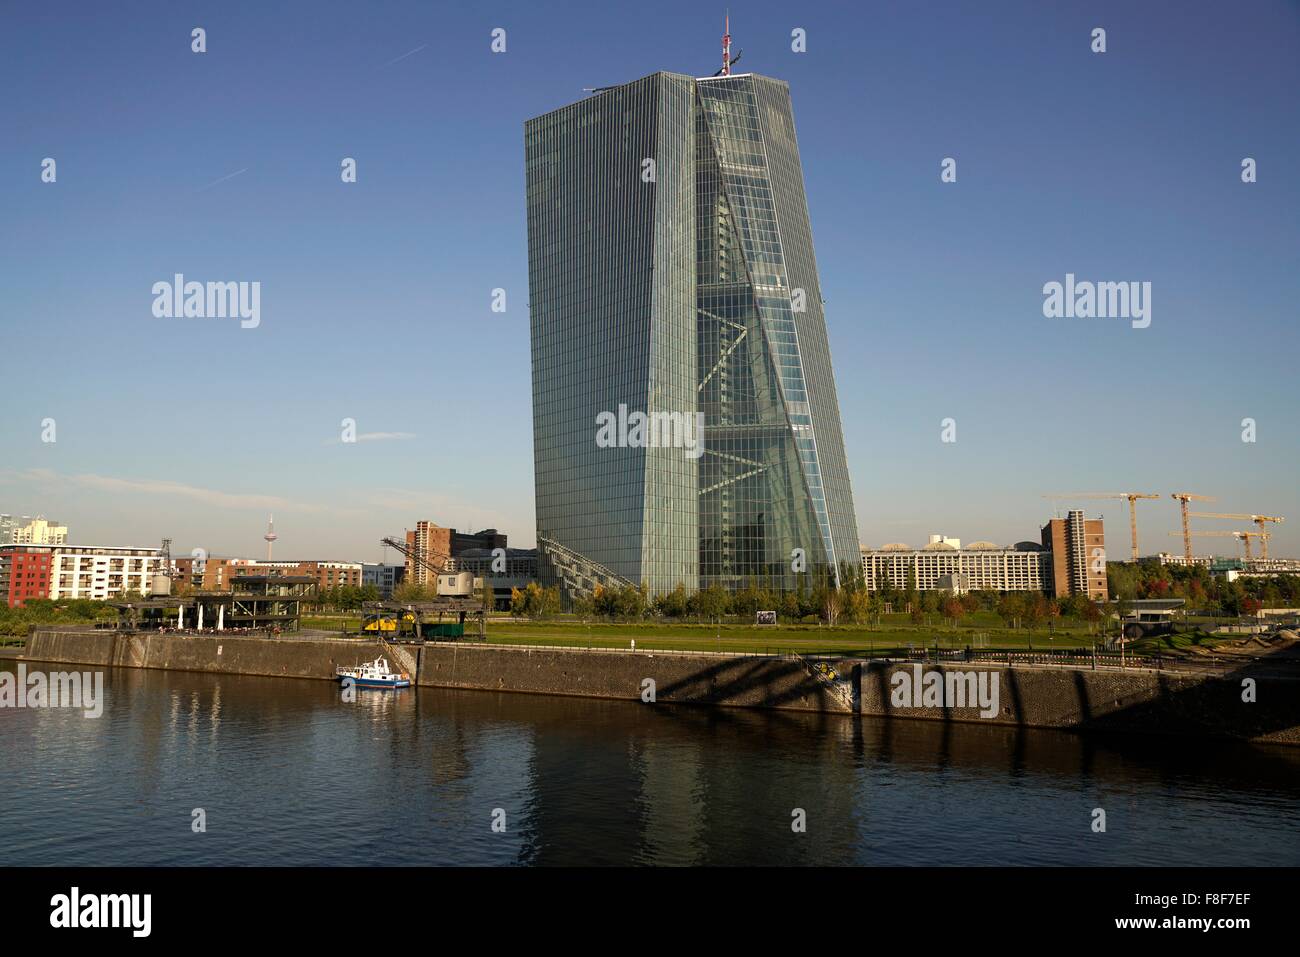 La nuova Banca centrale europea di Francoforte sul Meno, Hessen, Germania, Europa Foto Stock